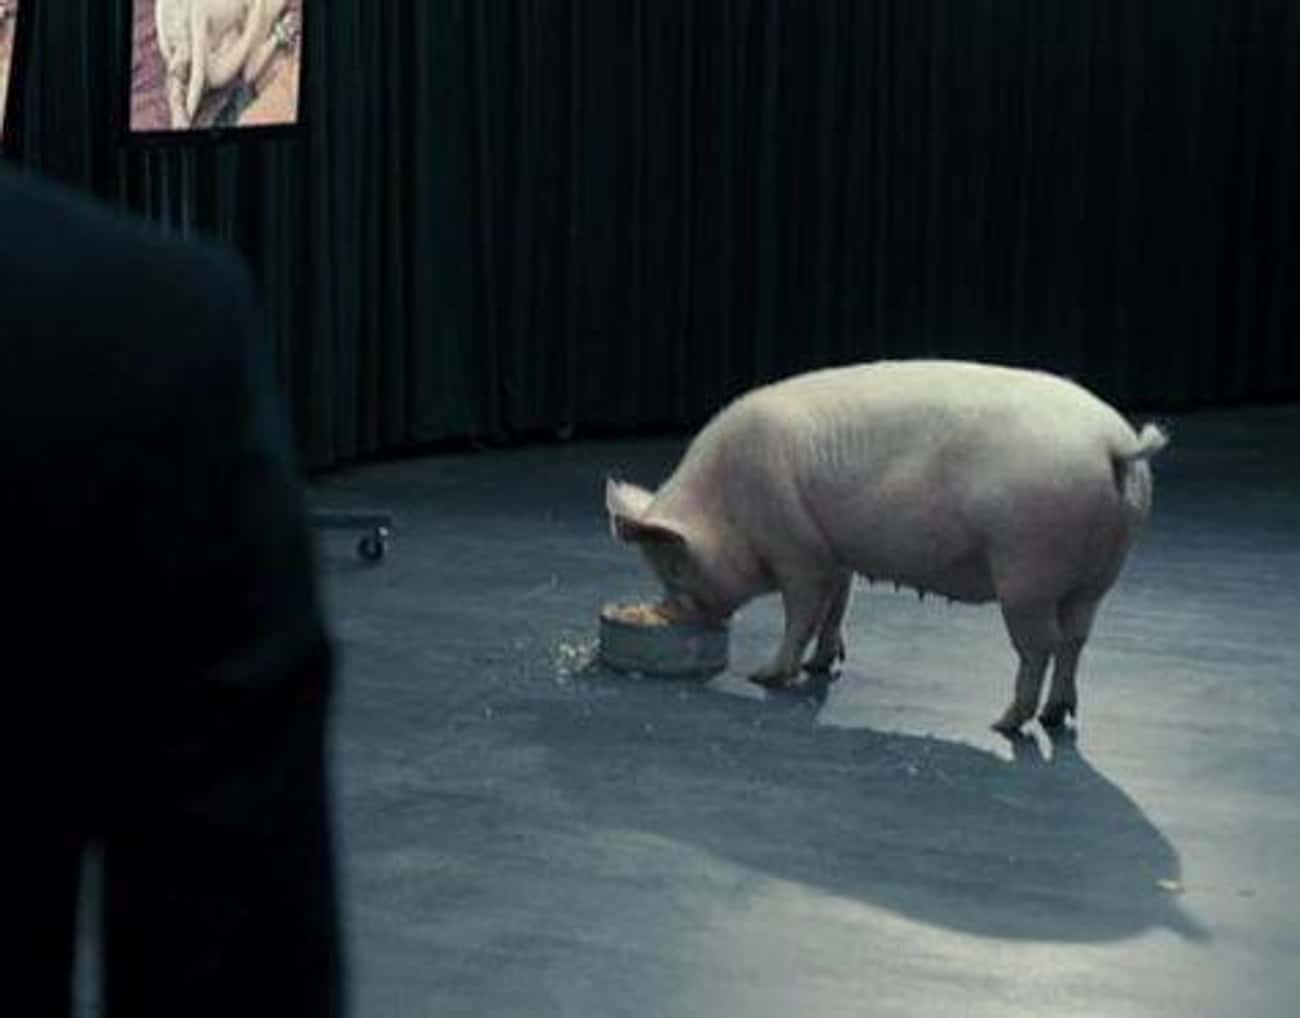 The Pig Scene In 'Black Mirror'